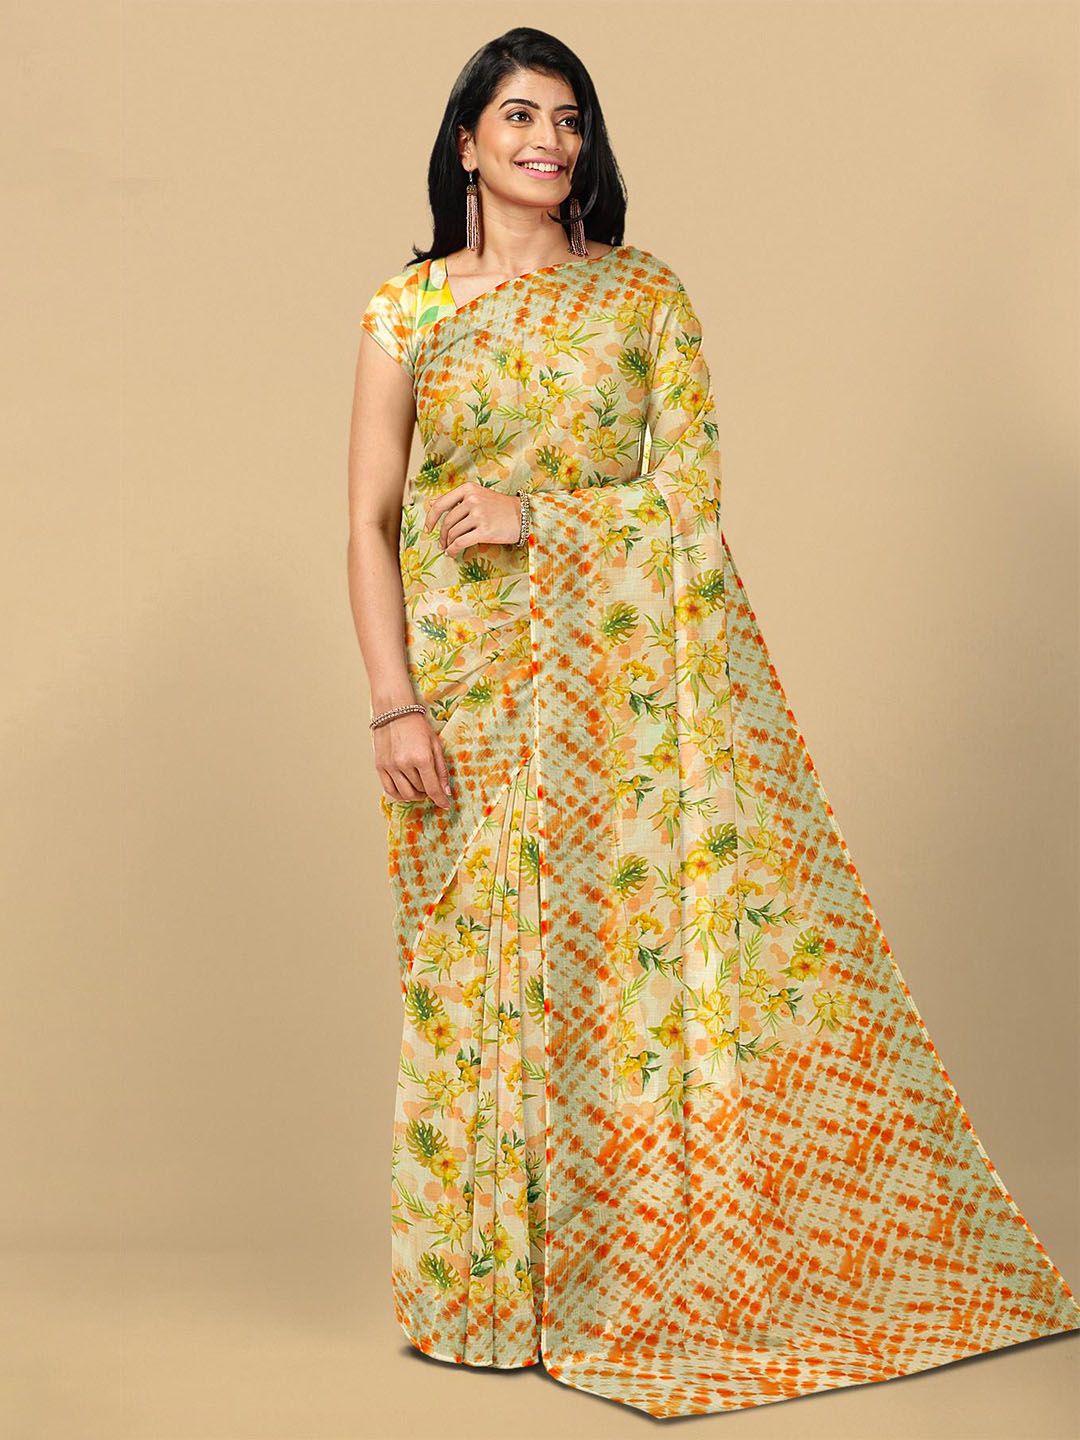 Kalamandir Yellow & Green Floral Linen Blend Saree Price in India